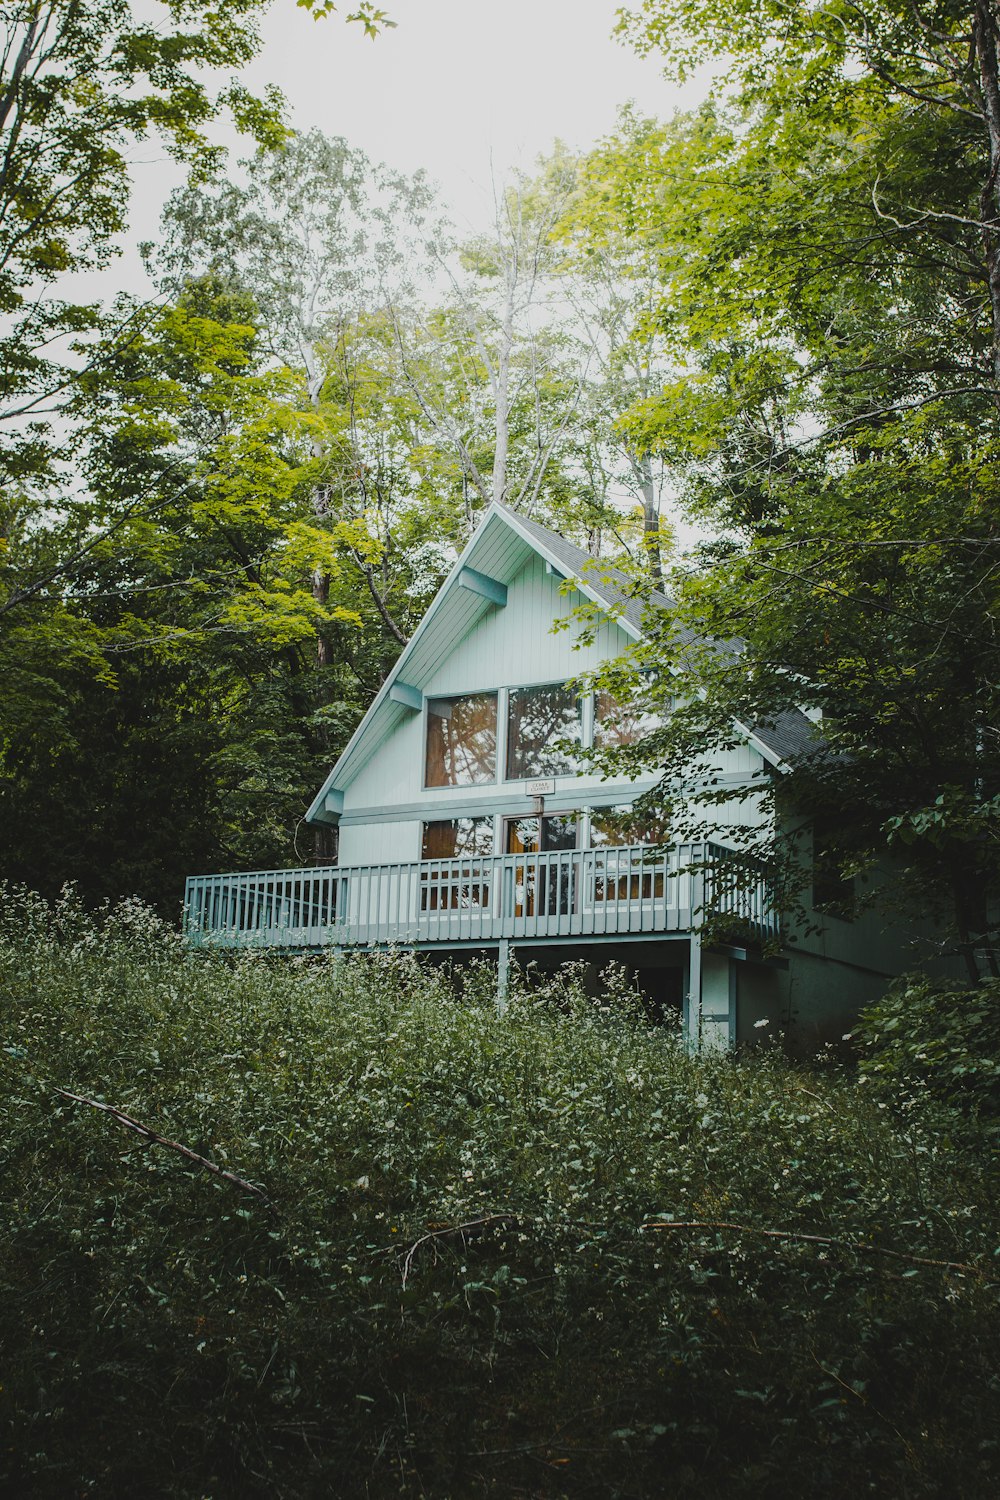 Casa blanca de madera rodeada de árboles verdes durante el día